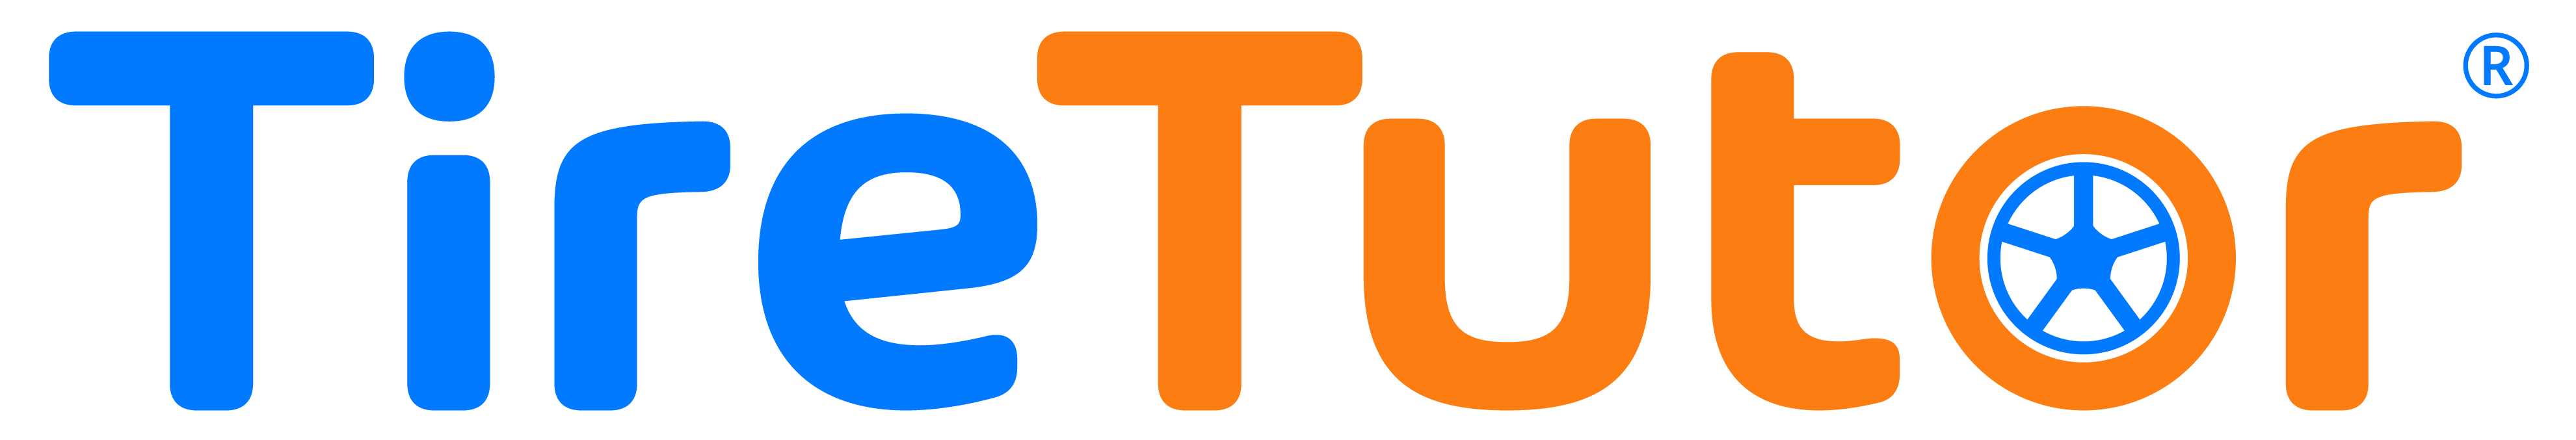 TireTutor_Logo